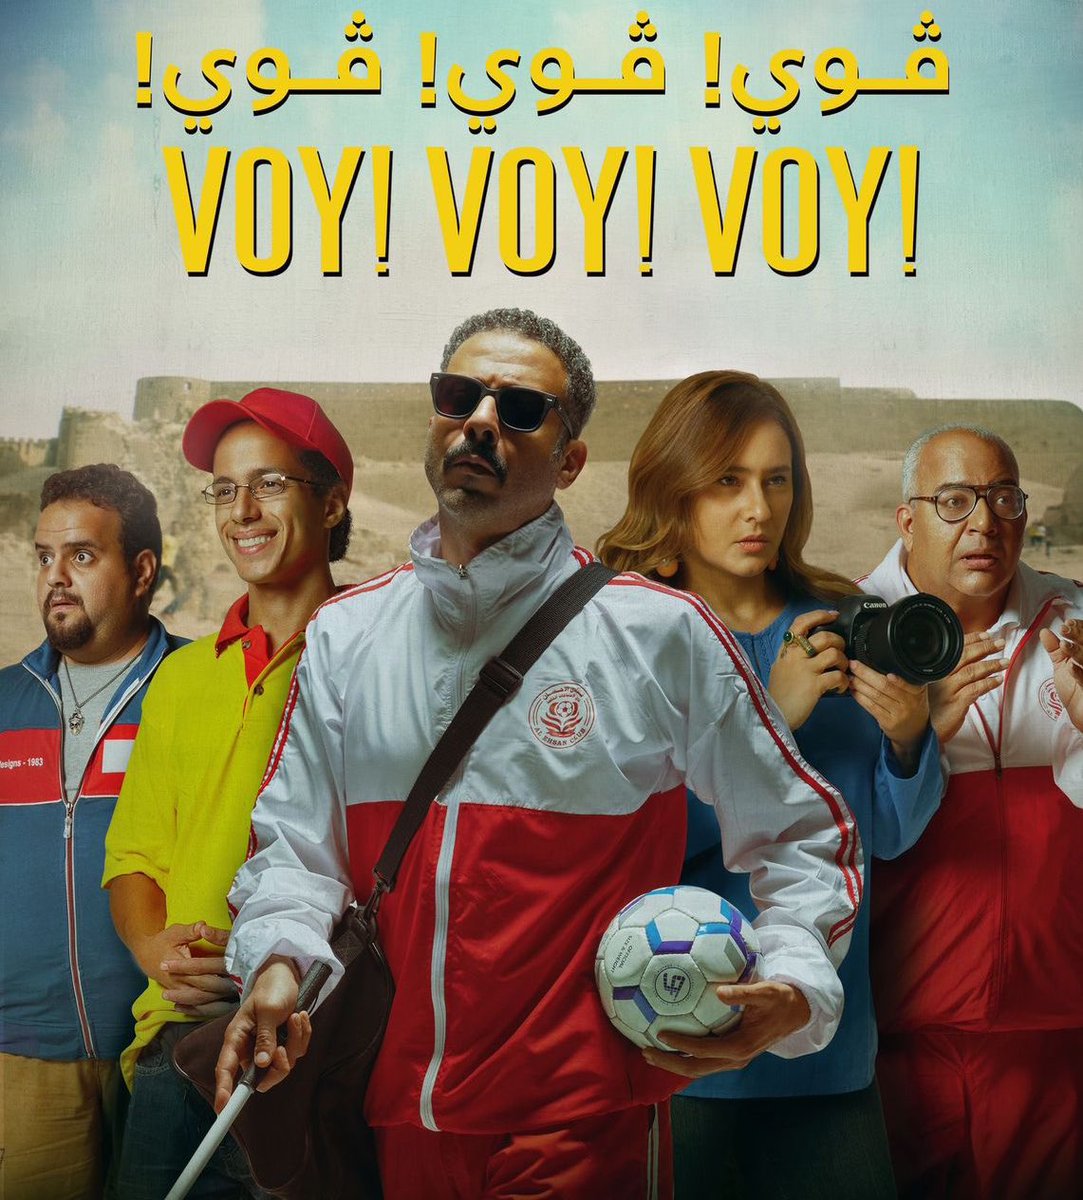 الفلم المصري voy! !voy !voy
عن قصة حقيقية لدخول شخص فريق لكرة القدم للمكفوفين للعب في بطولة العالم والهروب من هناك للأبد فلم درامي كوميدي رائع راح يعجبك👍🏼

#توصيات_سينمائية 
#faanscinema 
@faanscinema